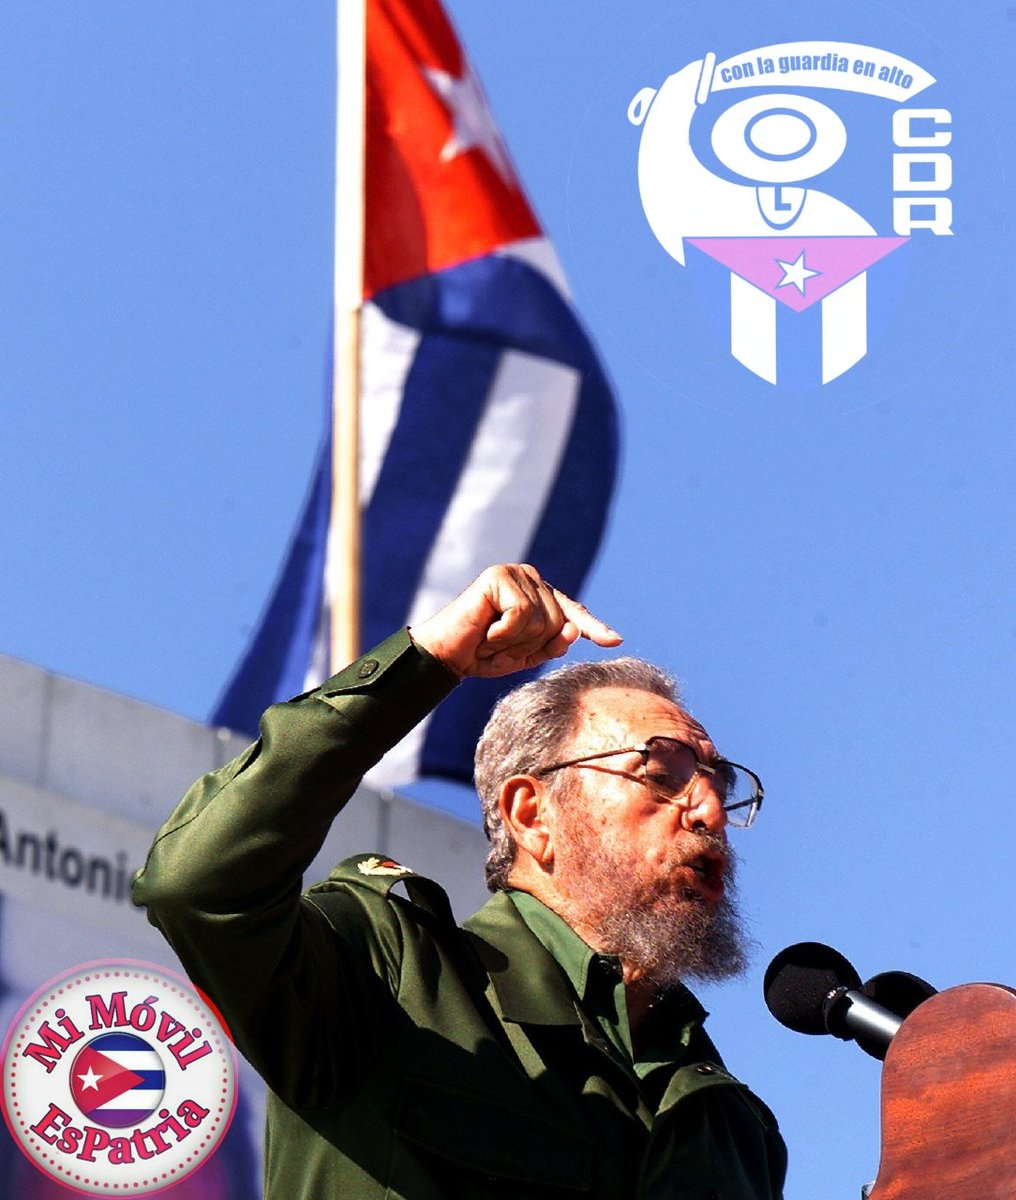 @EVilluendasC A 63 años de su creación por iniciativa de Fidel, los CDR siguen teniendo como misión principal la defensa de la Revolución desde el barrio. Revitalizar la organización, un reto de hoy. #XCongresoCDR #TodosSomosCederistas #MiMóvilEsPatria